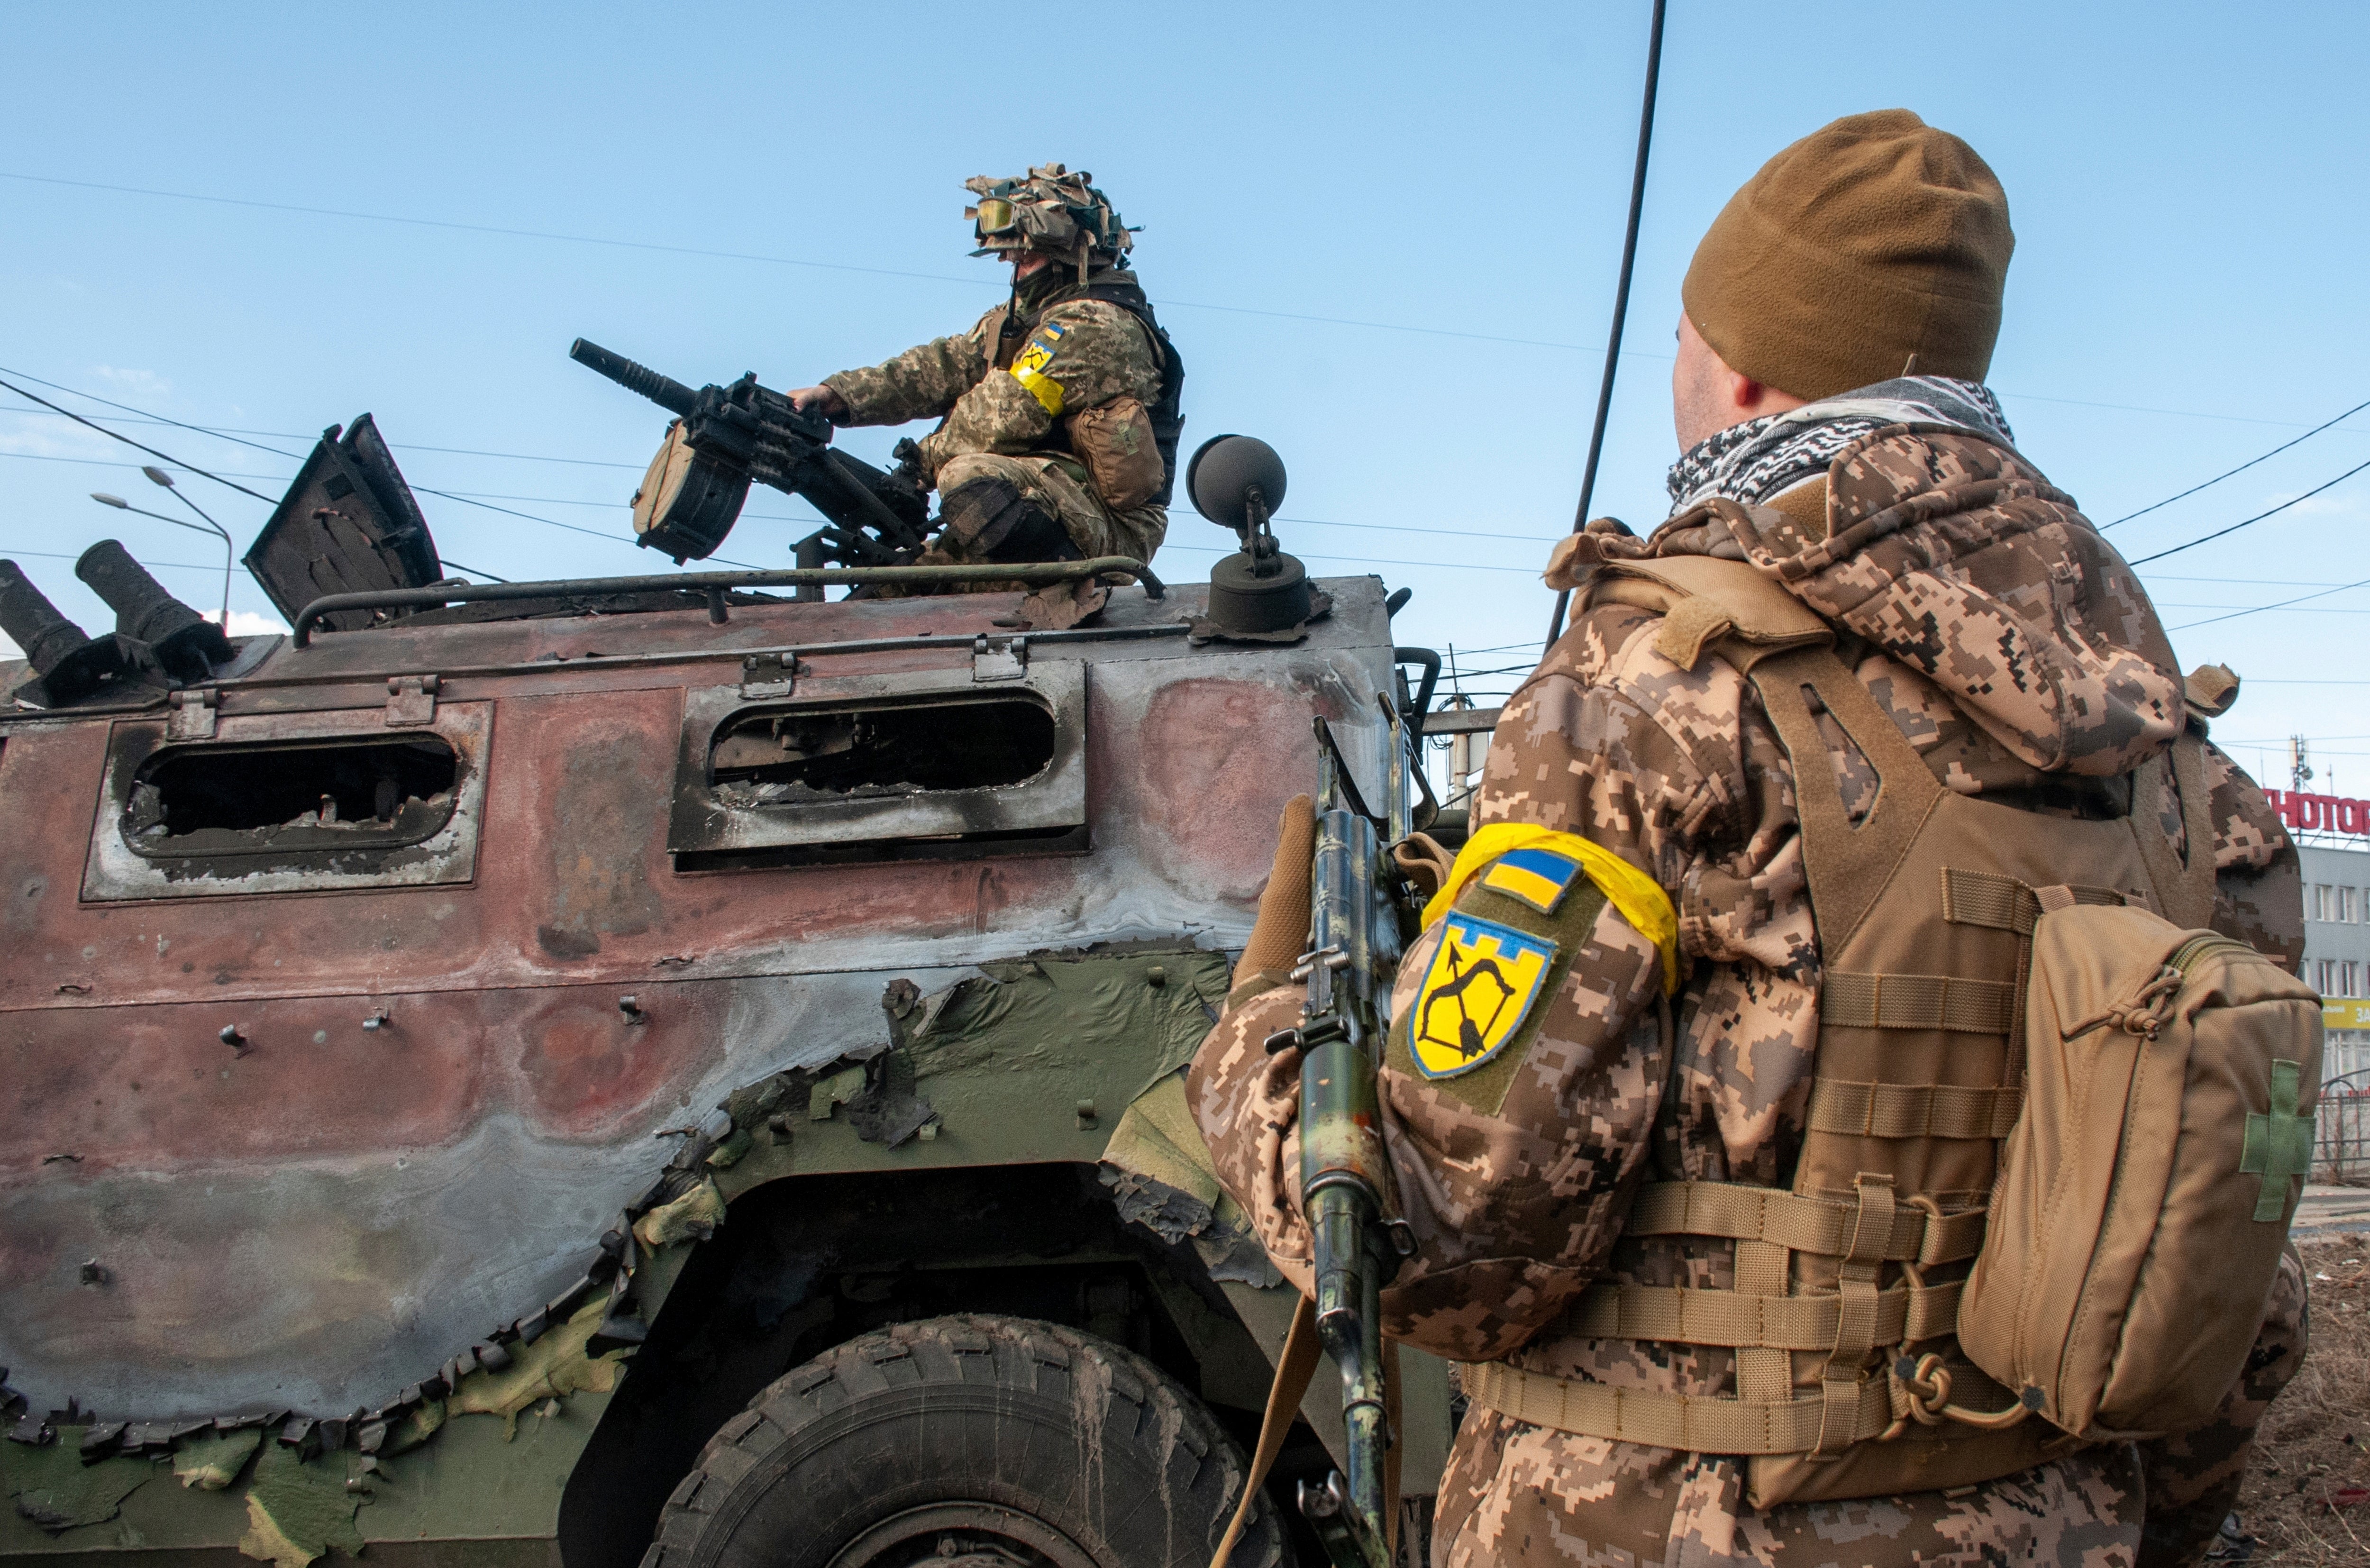 Soldados ucranianos inspeccionan un vehículo militar descompuesto después de pelear en Járkov, Ucrania, el domingo 27 de febrero de 2022